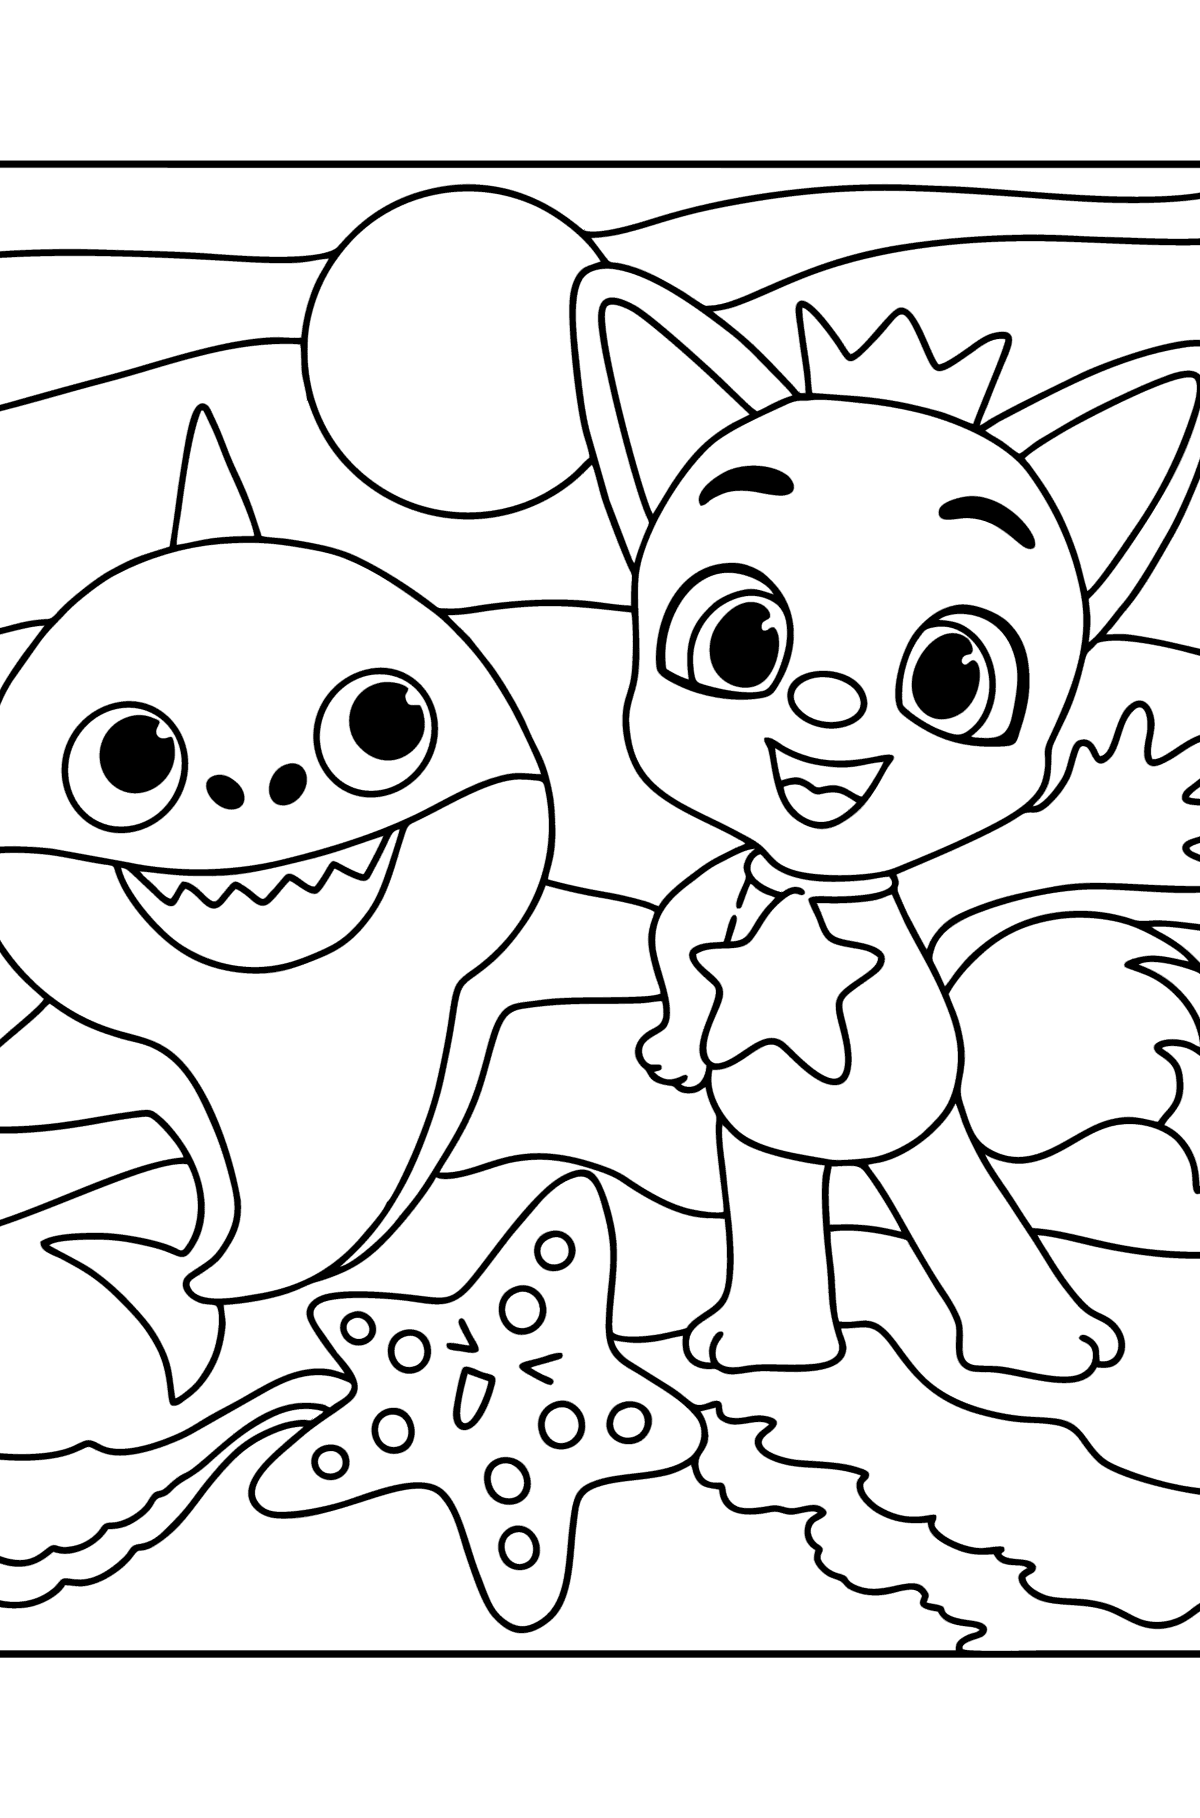 Desenho de Pinkfong Baby shark para colorir - Imagens para Colorir para Crianças